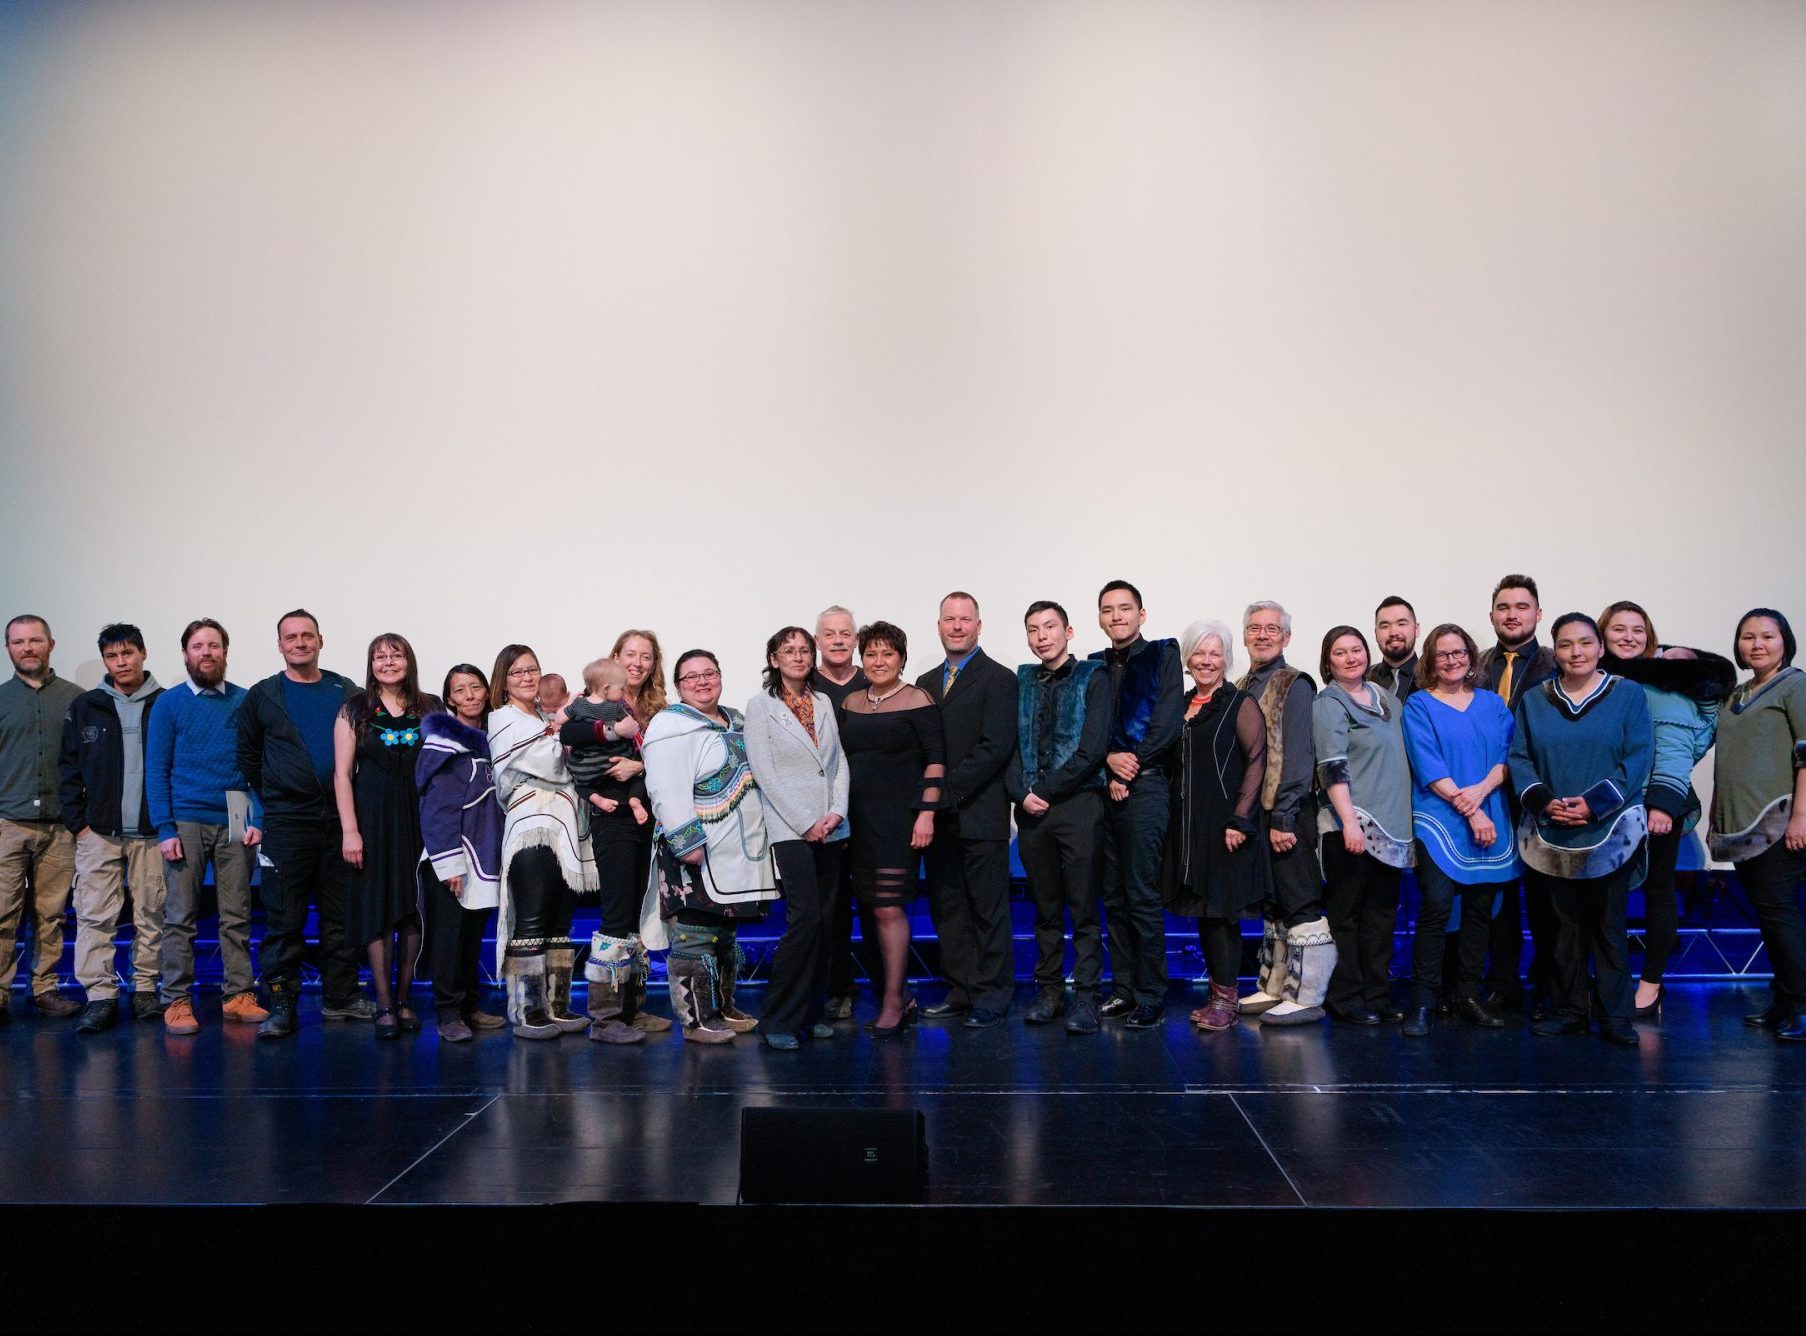 2018 AIP laureates on stage